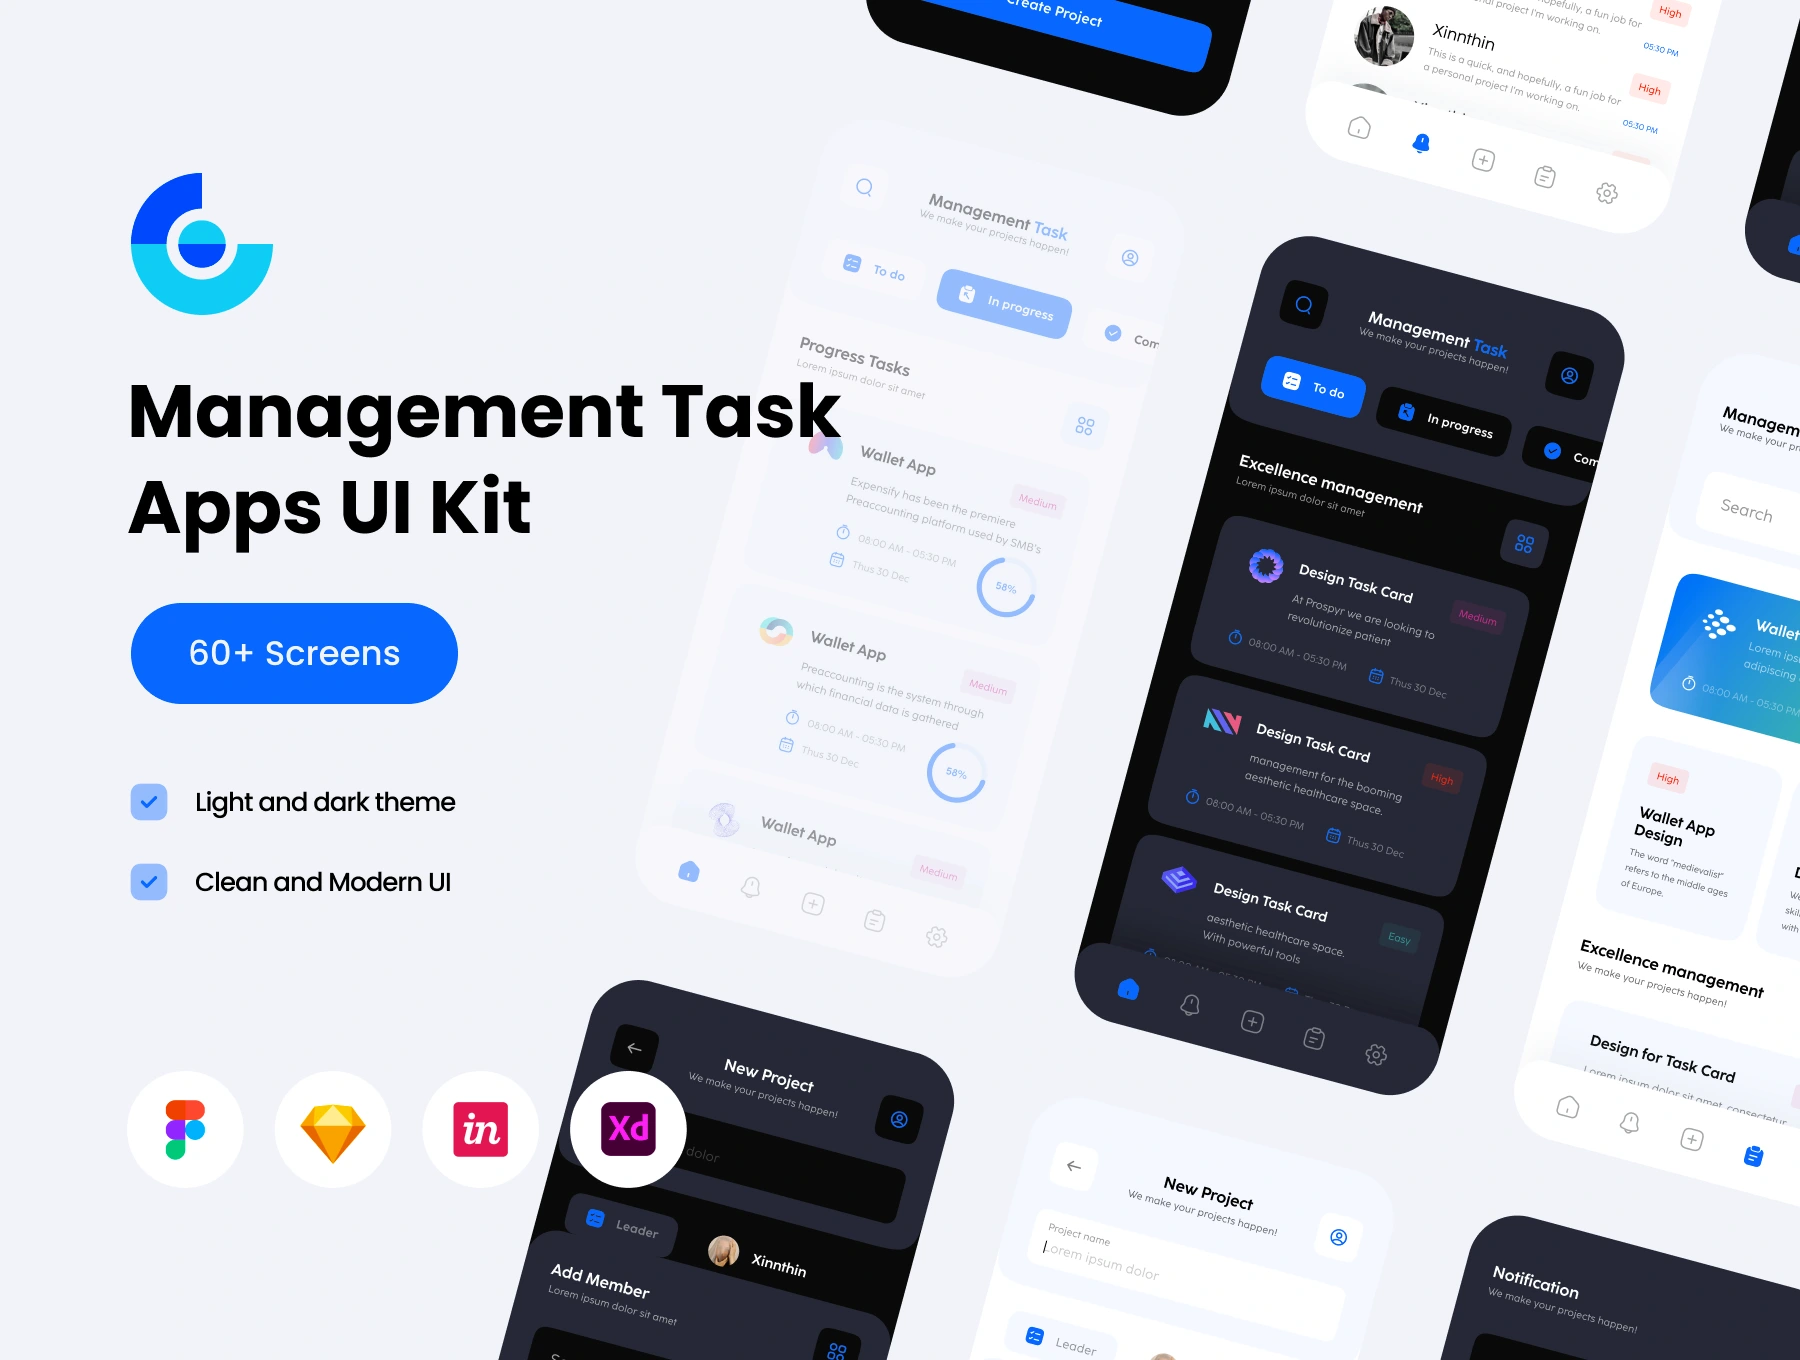 [VIP] Management Task Mobile Apps UI KIT